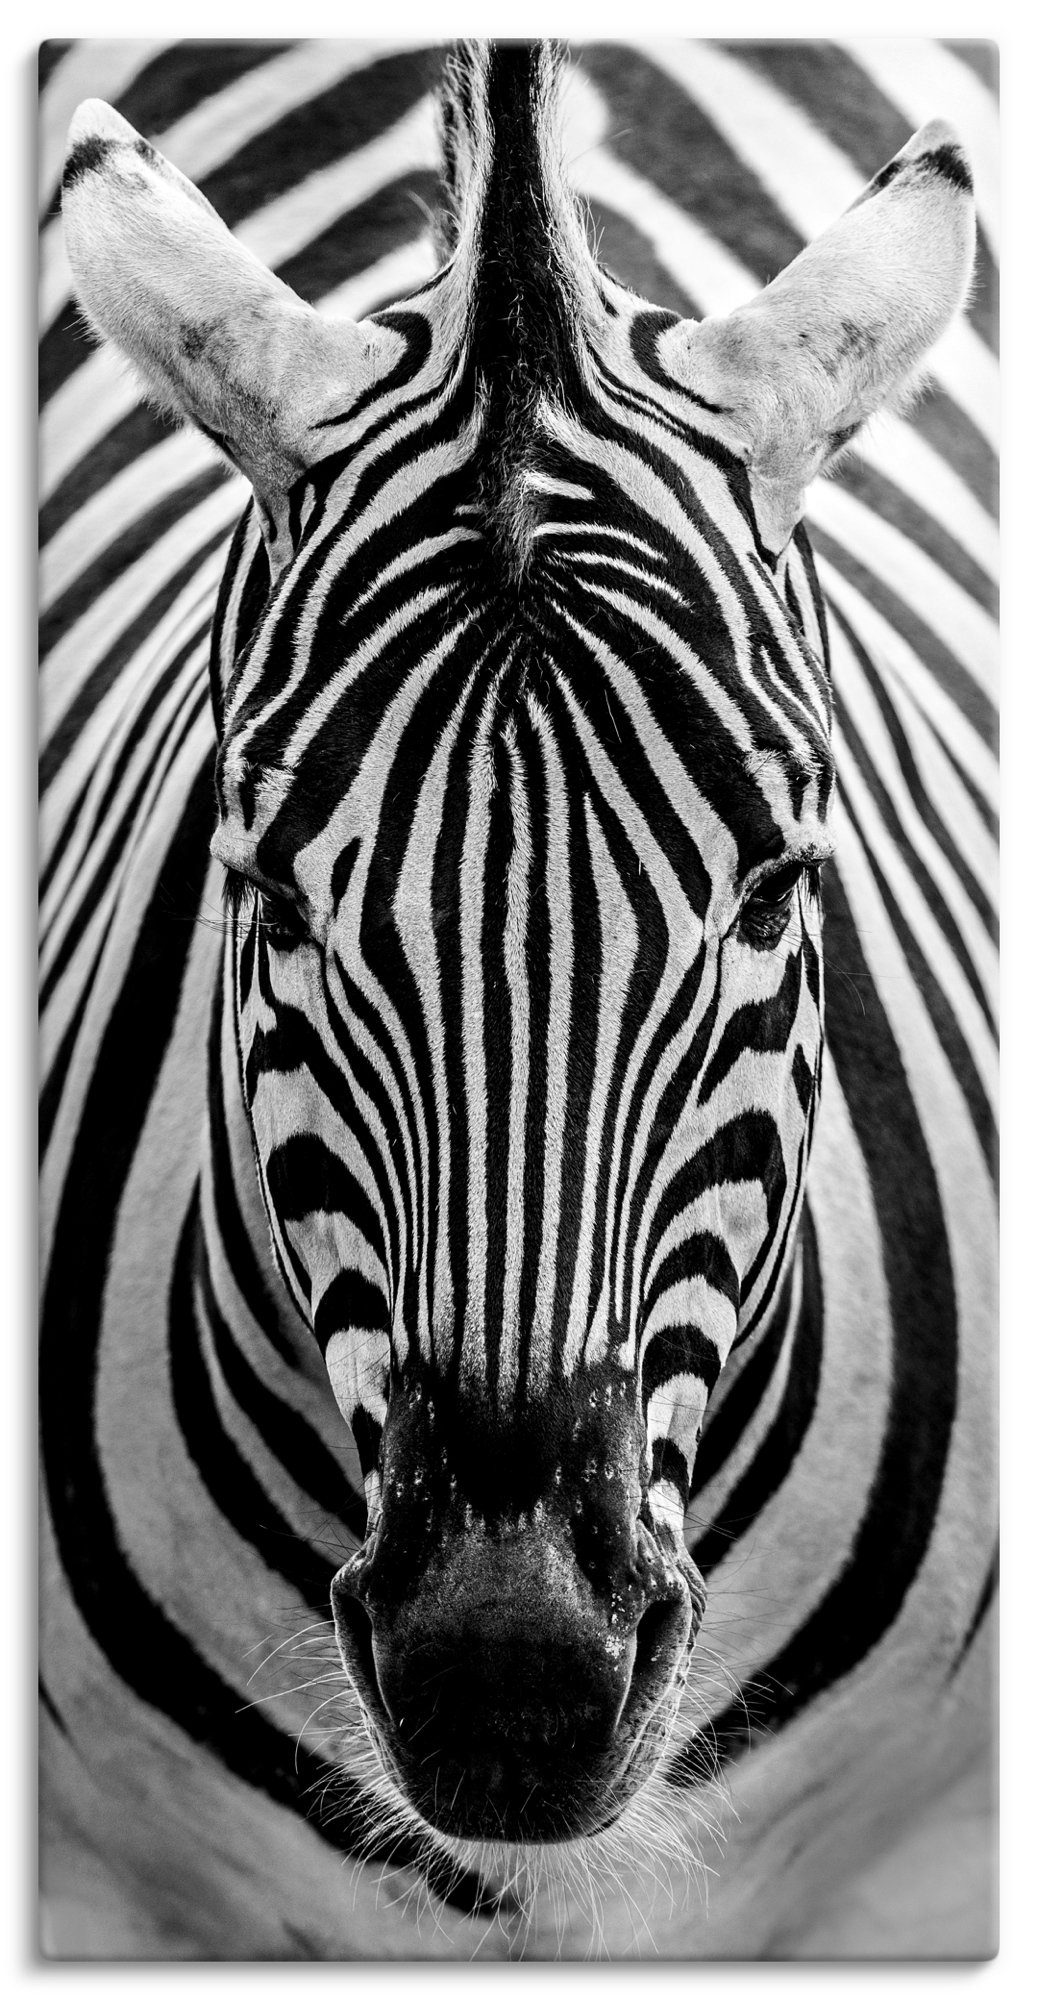 Artland Artprint Zebra in vele afmetingen & productsoorten - artprint van aluminium / artprint voor buiten, artprint op linnen, poster, muursticker / wandfolie ook geschikt voor de